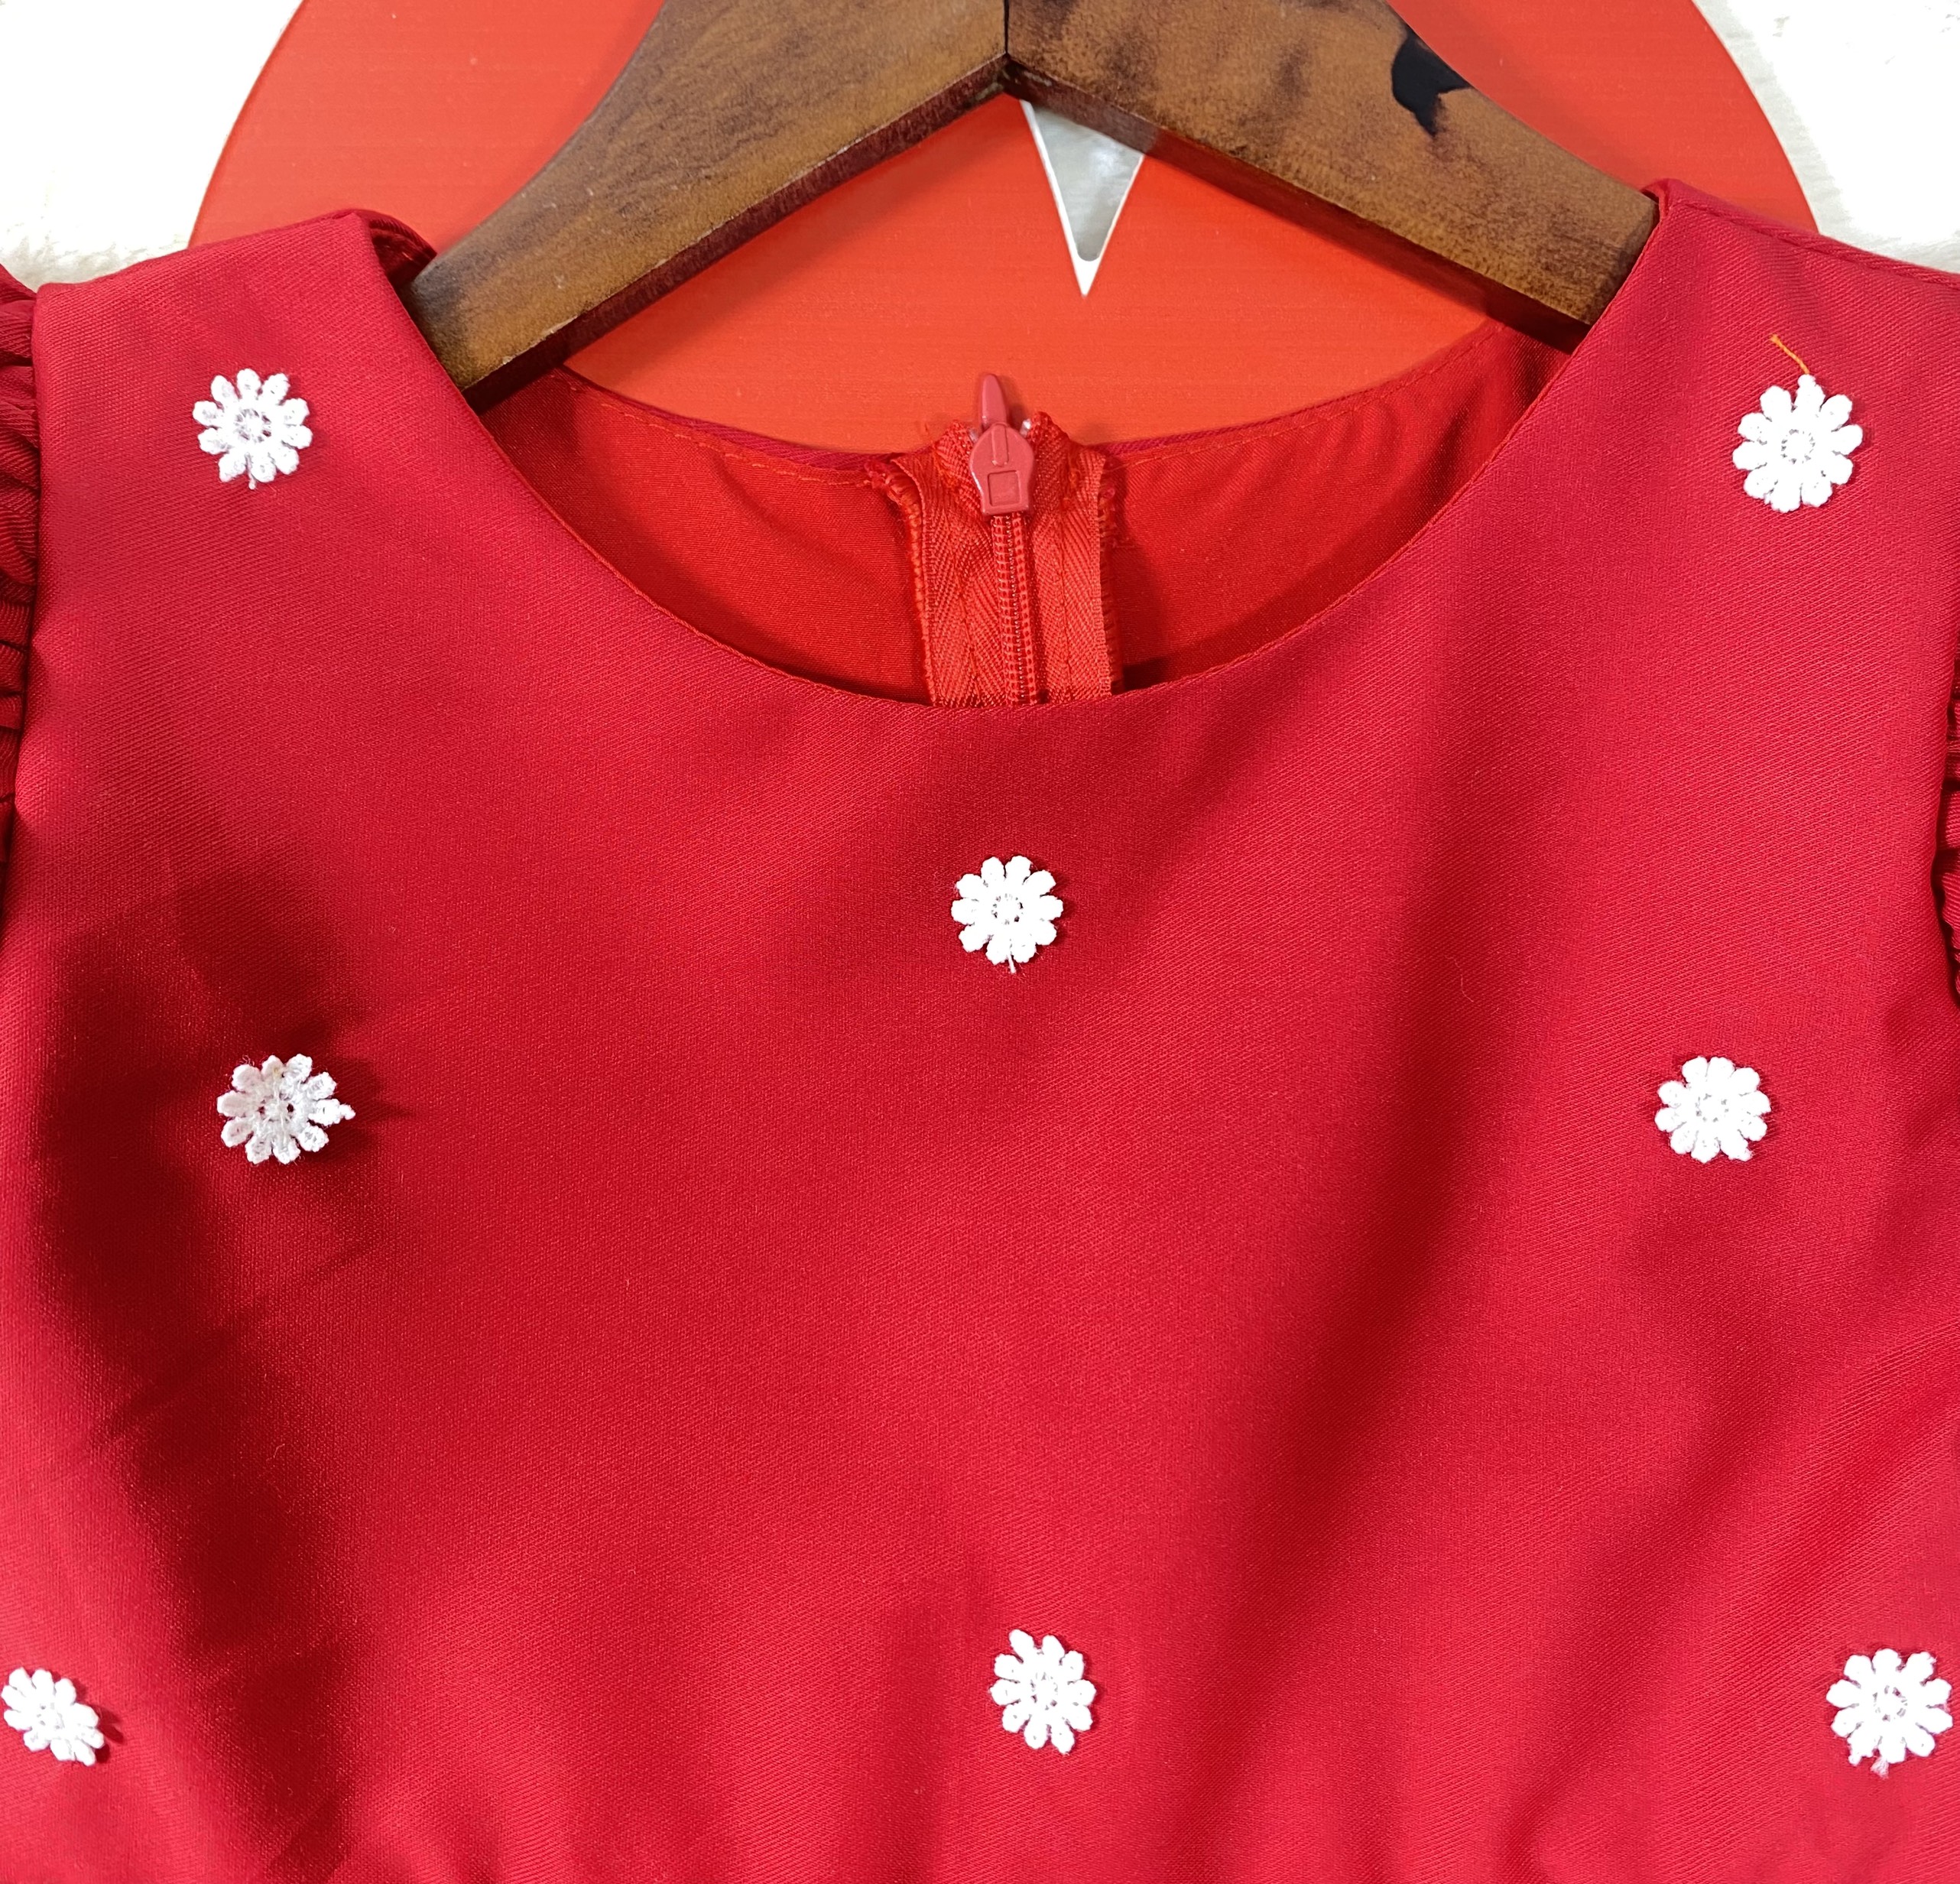 Đầm bé gái hàng thiết kế màu đỏ phối bông tuyết chơi Noel, chơi tết size từ (8 - 35 kg) từ 1-8 tuổi